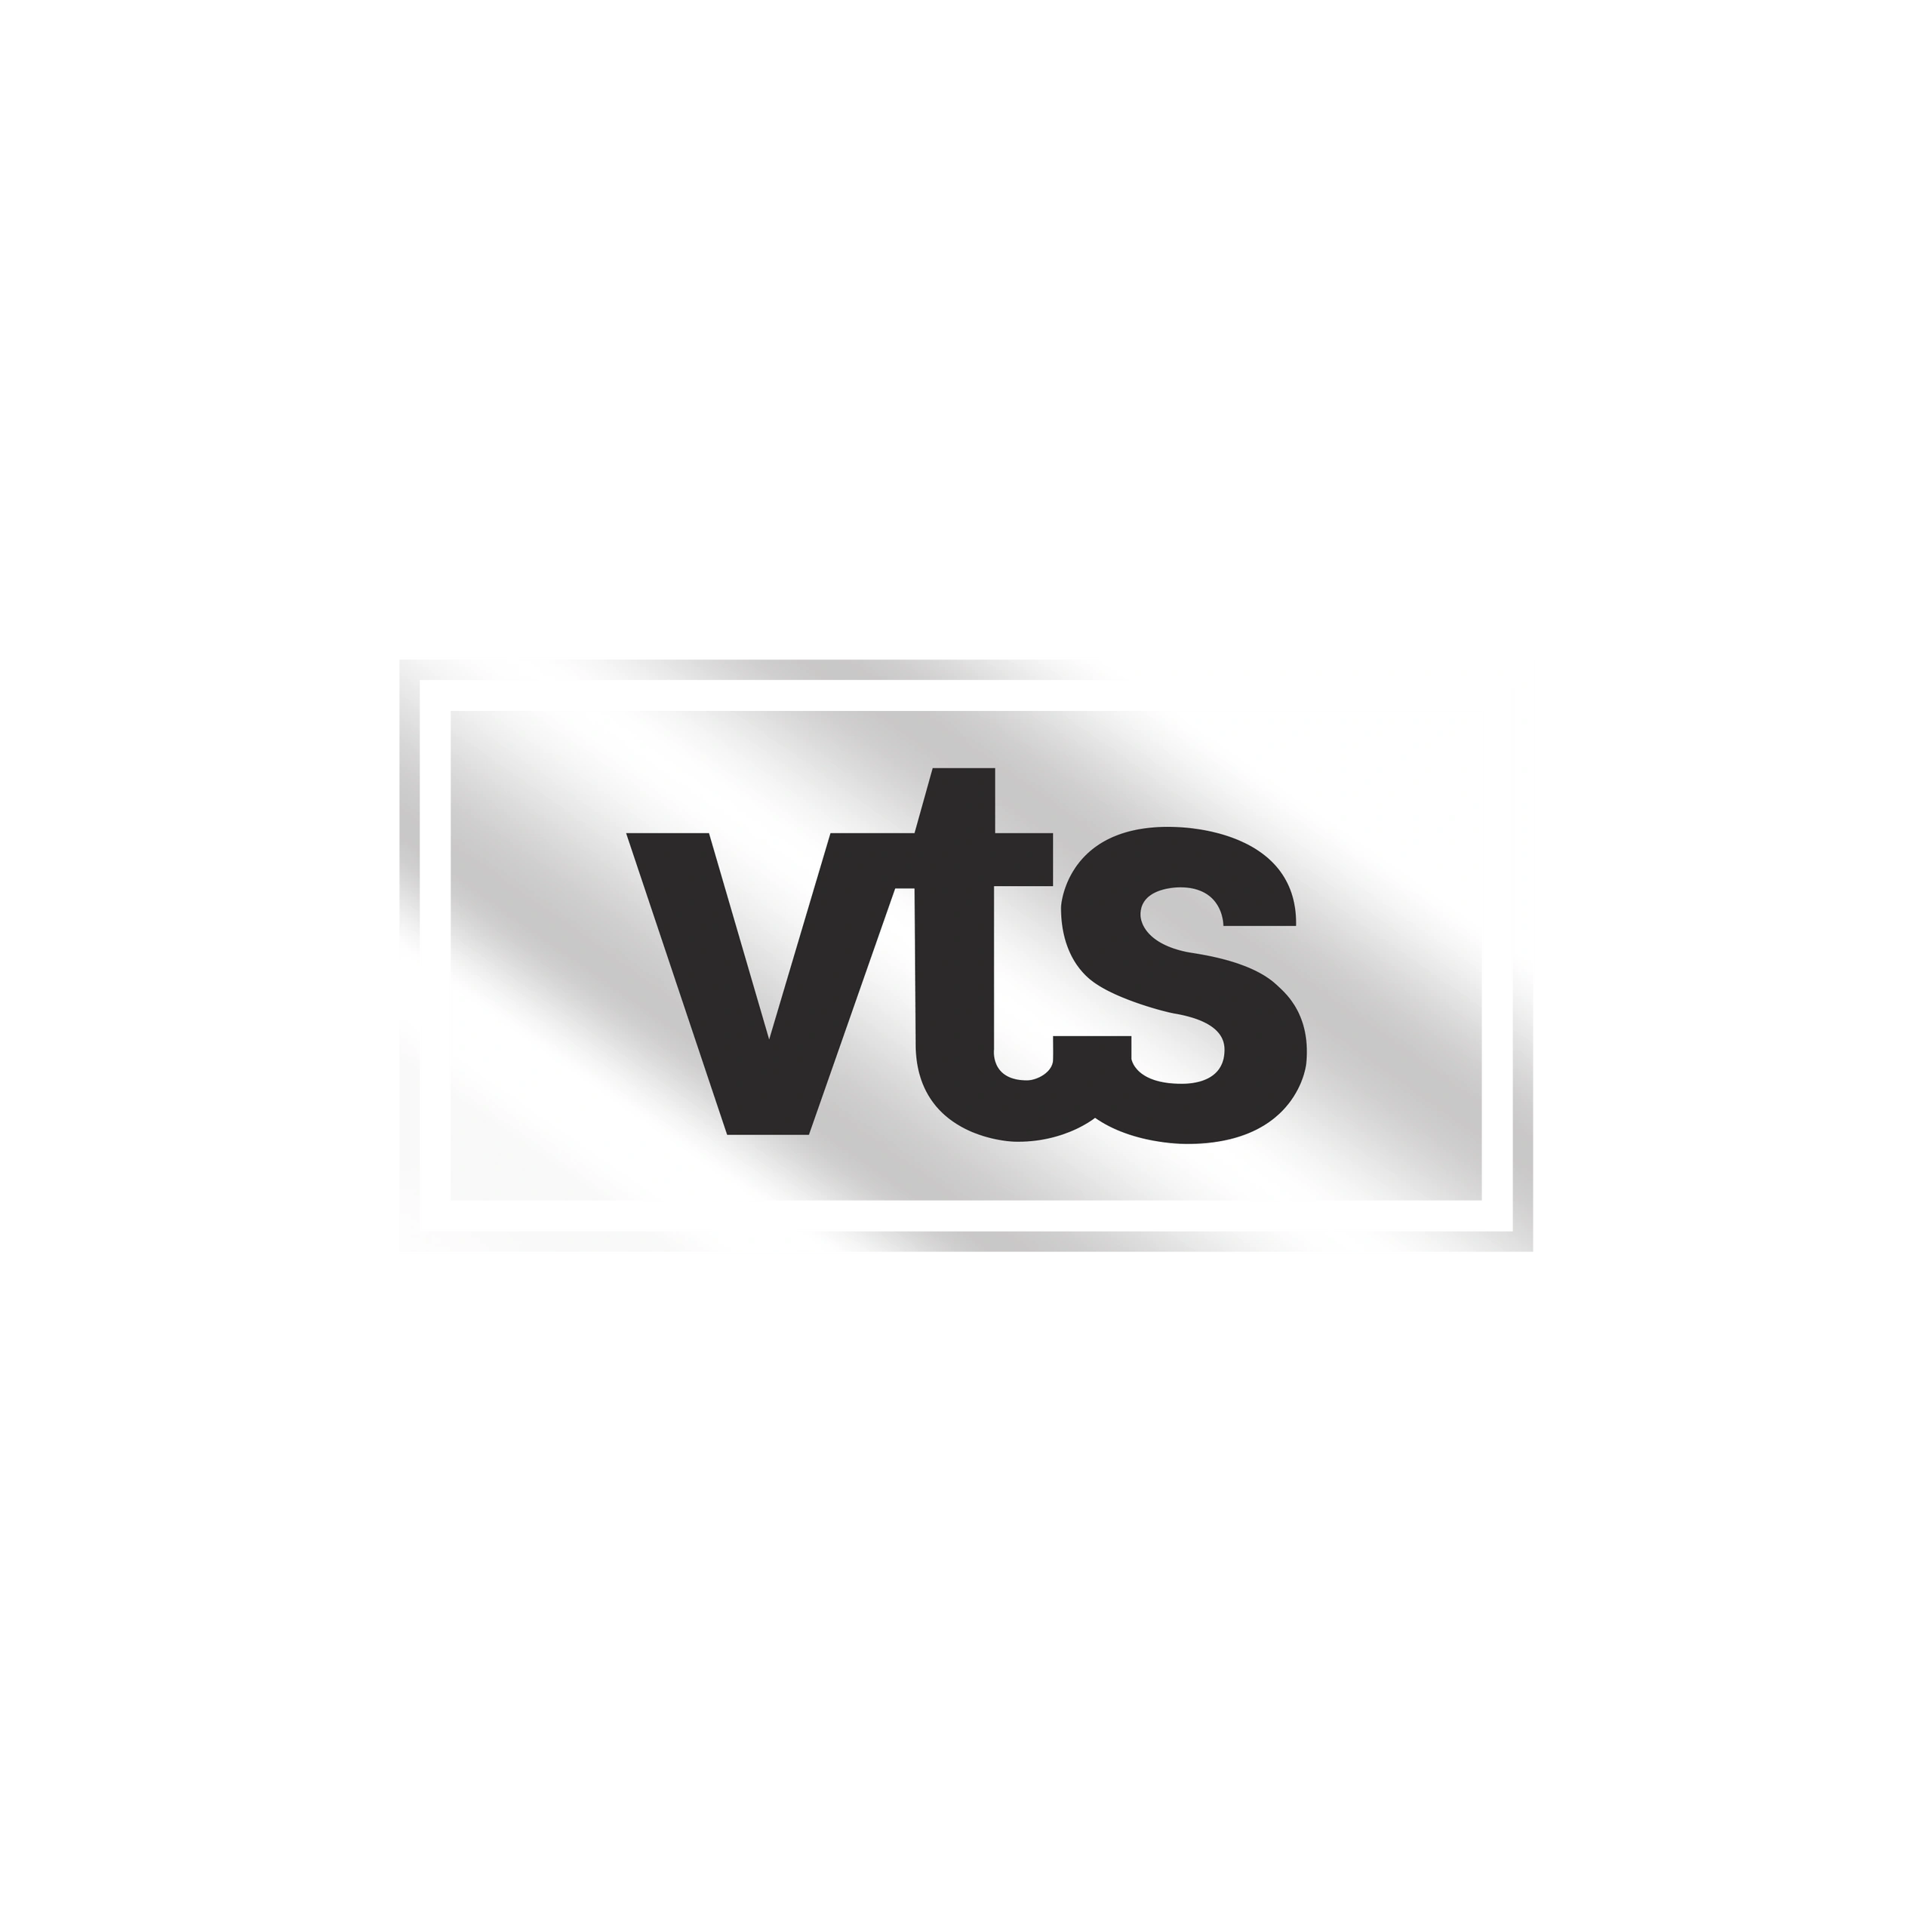 (c) Vts.net